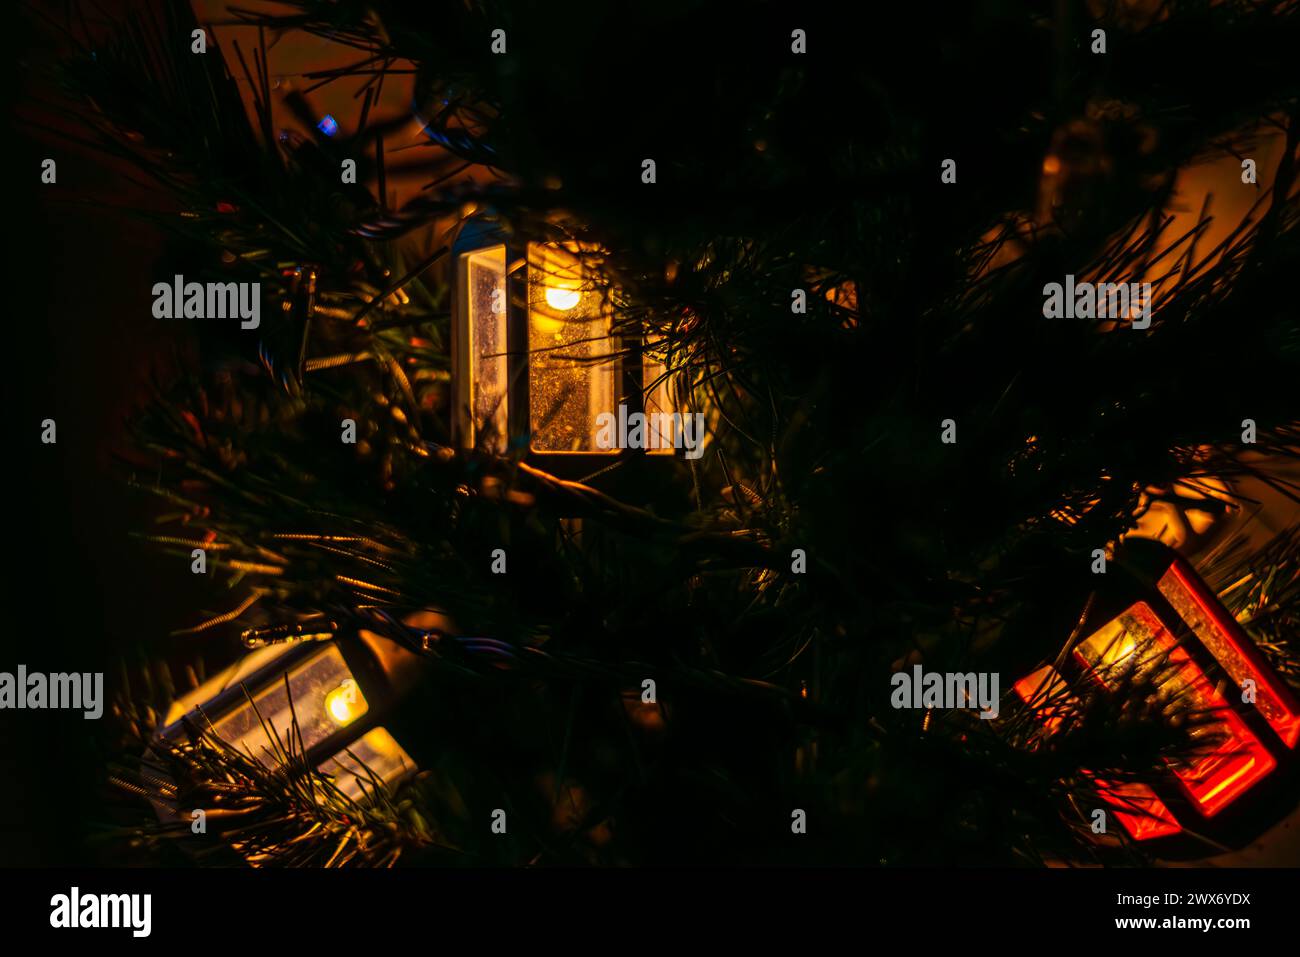 Le luminose lanterne a forma di lampione adornano l'albero di Natale, creando un'atmosfera festosa e lo spirito natalizio con un'illuminazione urbana decorativa. Foto Stock